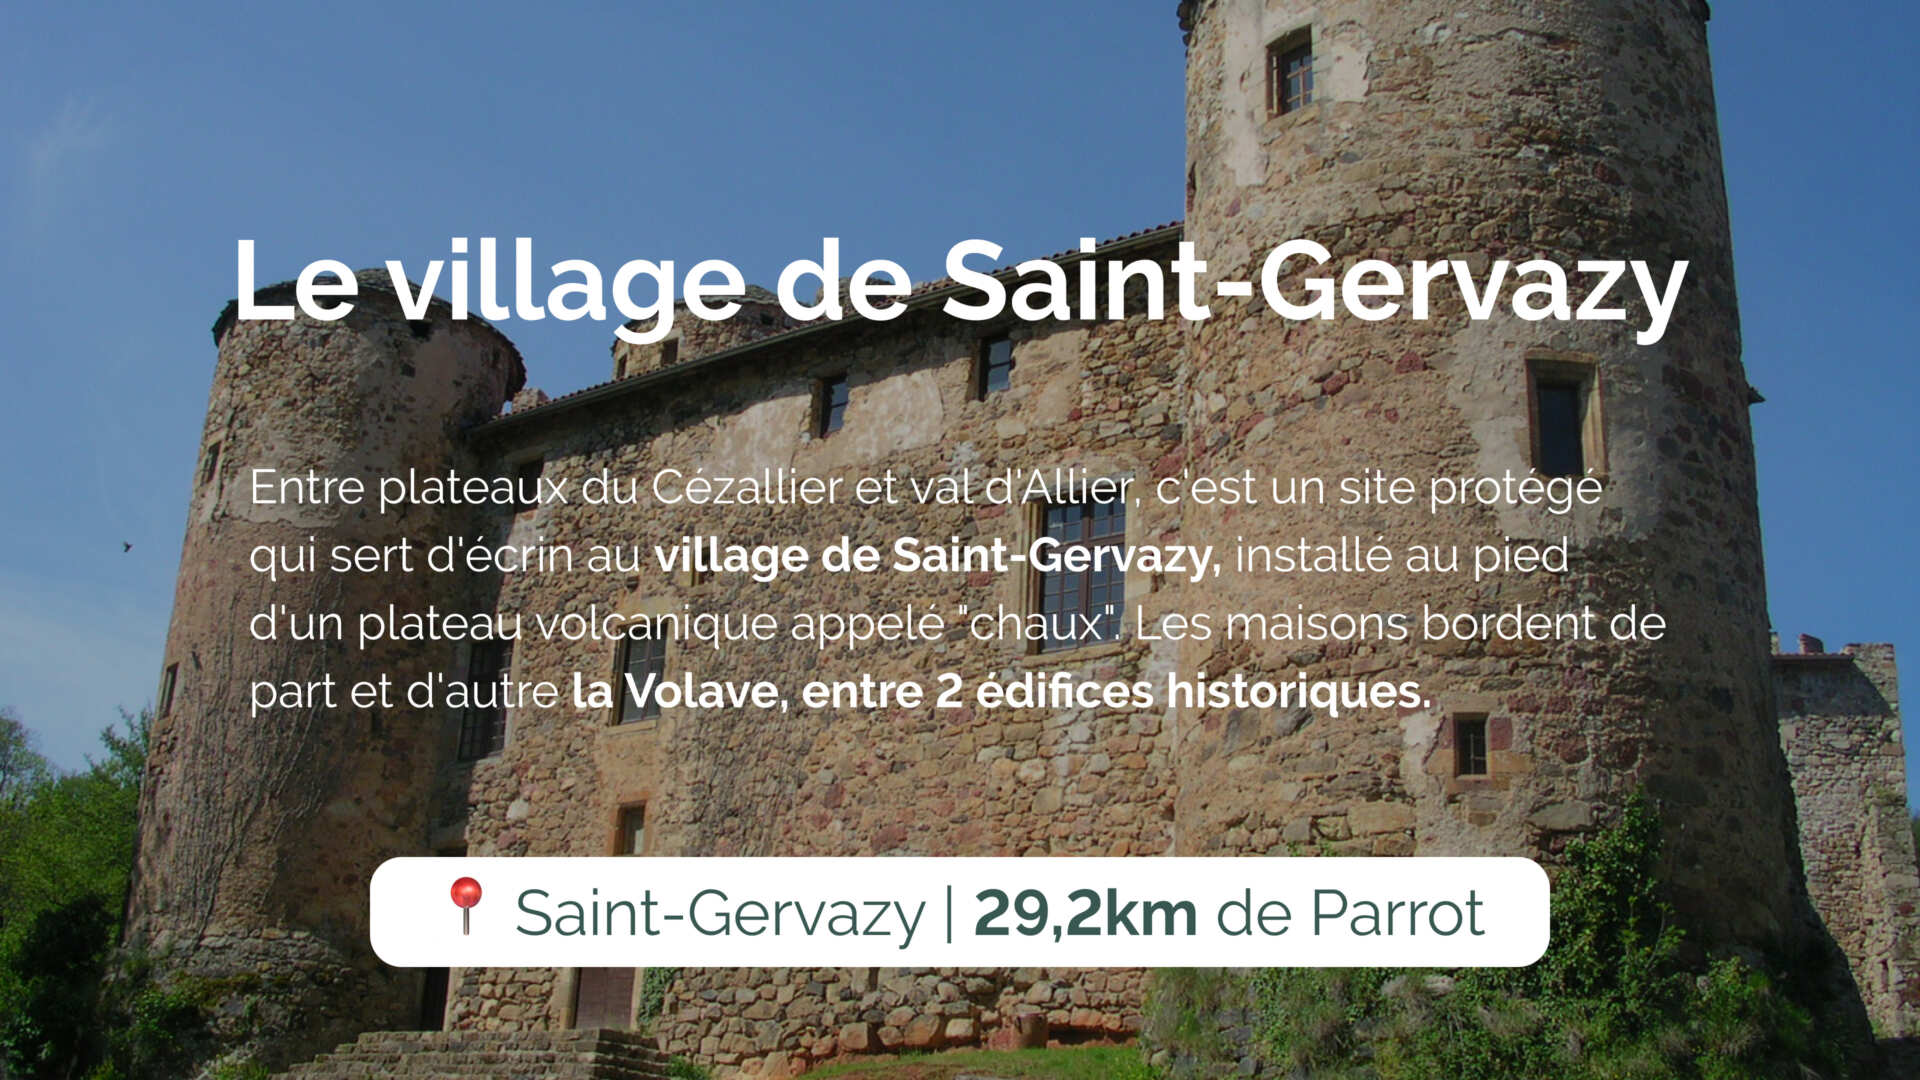 Le village de Saint-Gervazy